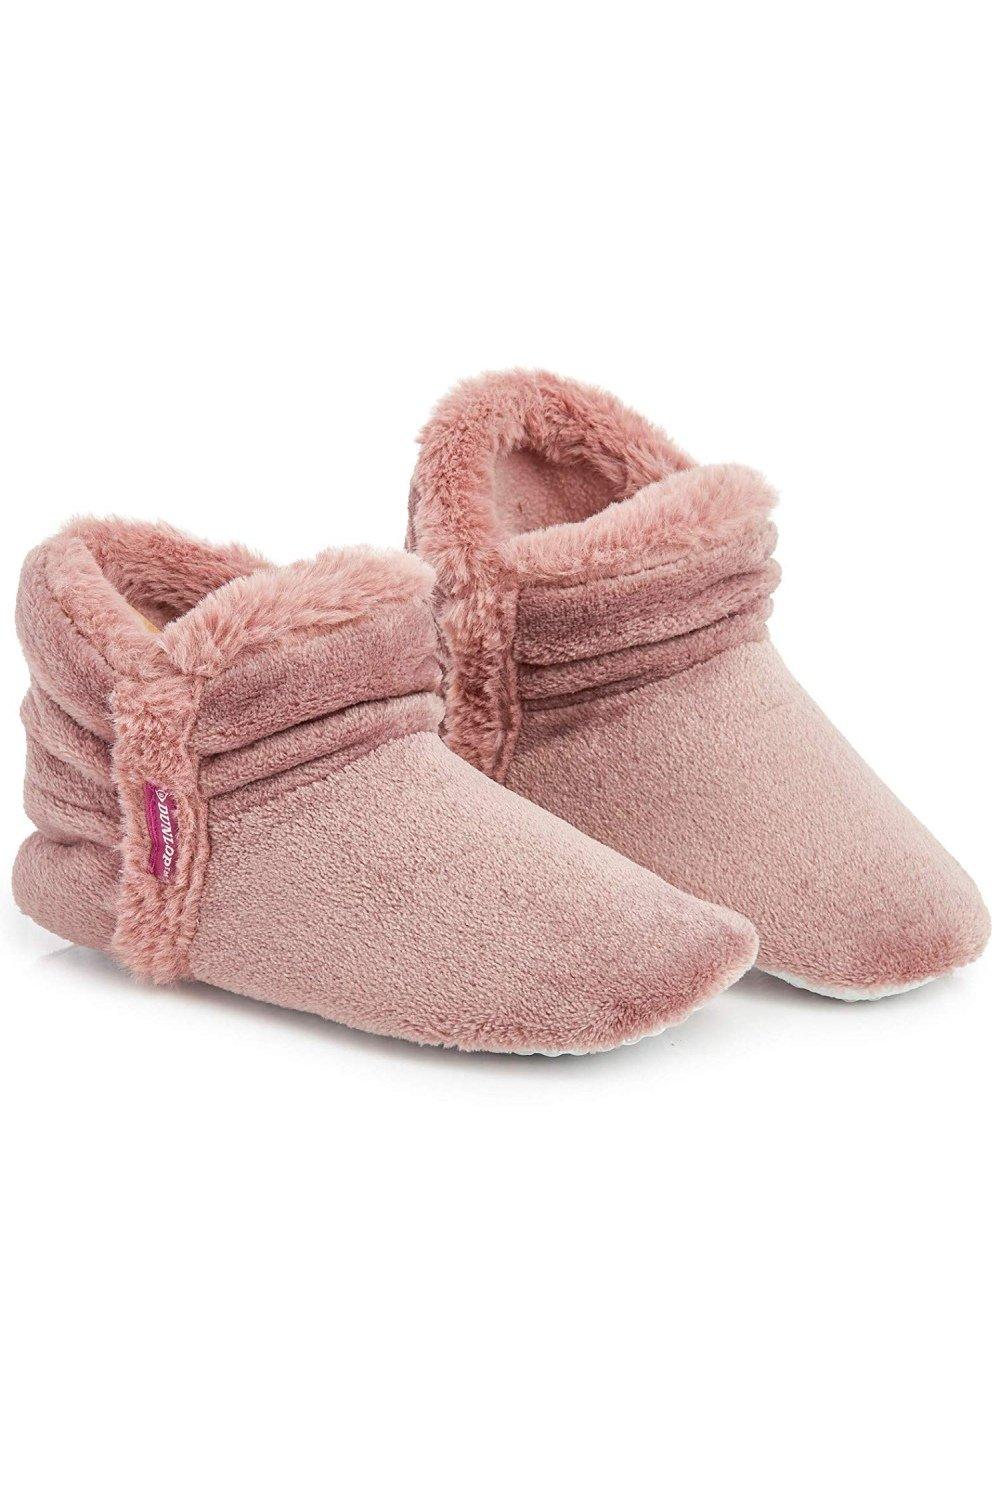 Тапочки-сапожки Dunlop, розовый высококачественные теплые мягкие модные брендовые тапочки kocotree для мальчиков и девочек детская мультяшная обувь детские зимние тапочки